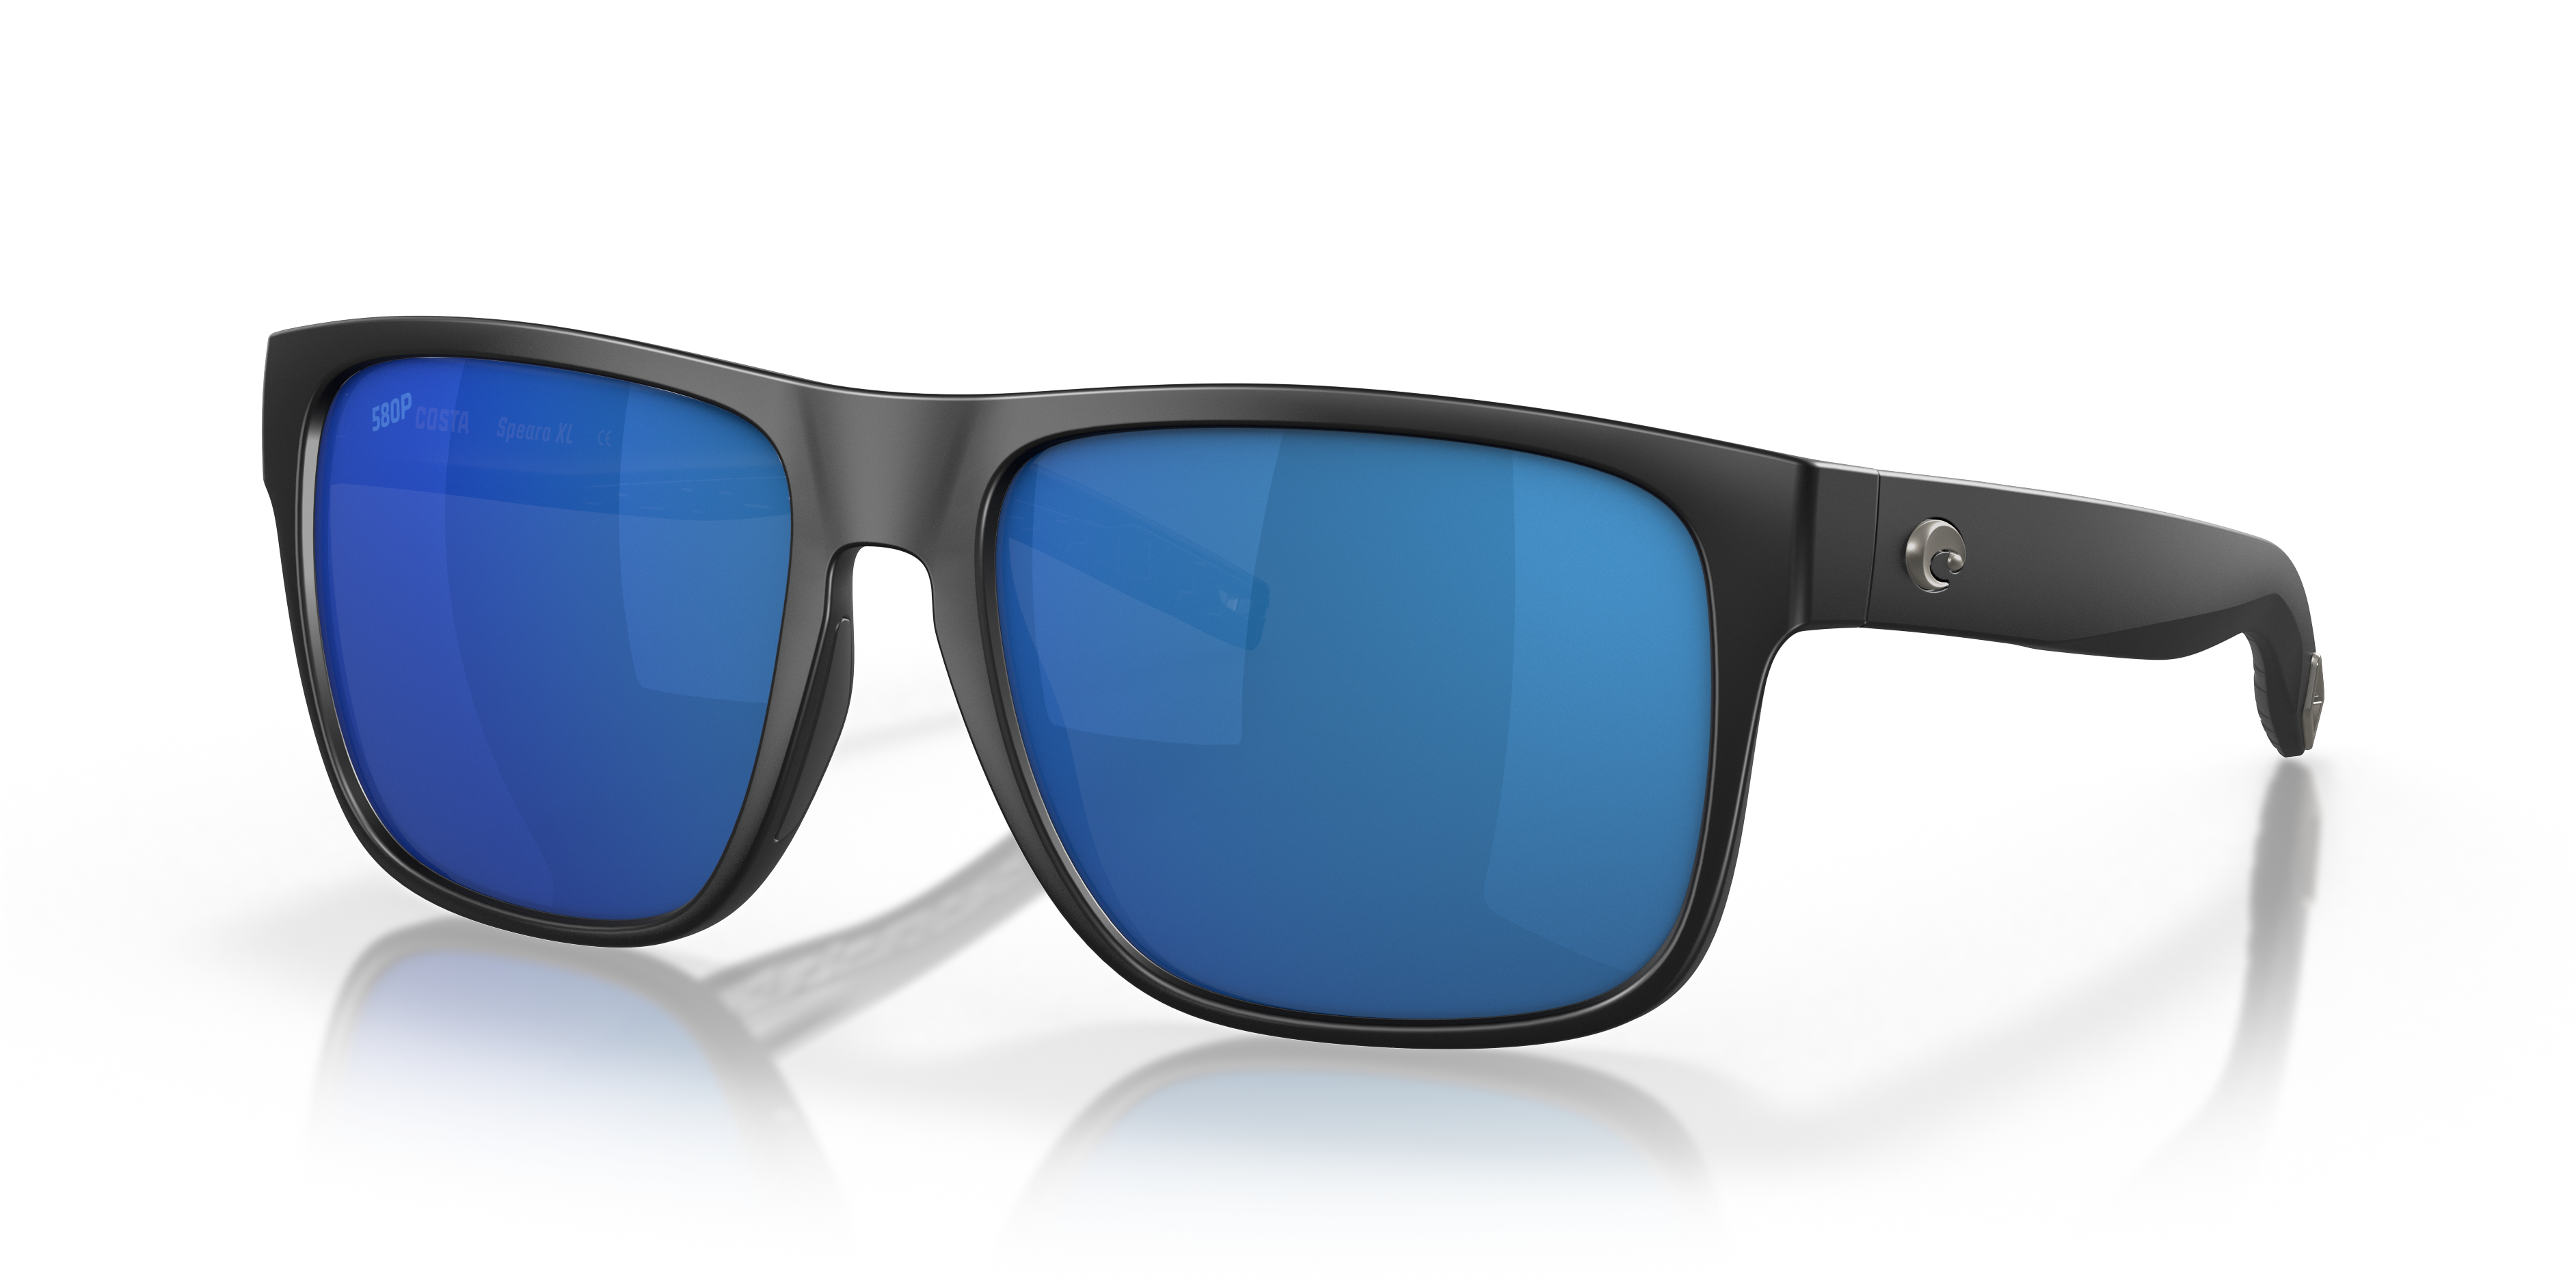 Spearo XL Polarized Sunglasses in Blue Mirror | Costa Del Mar®